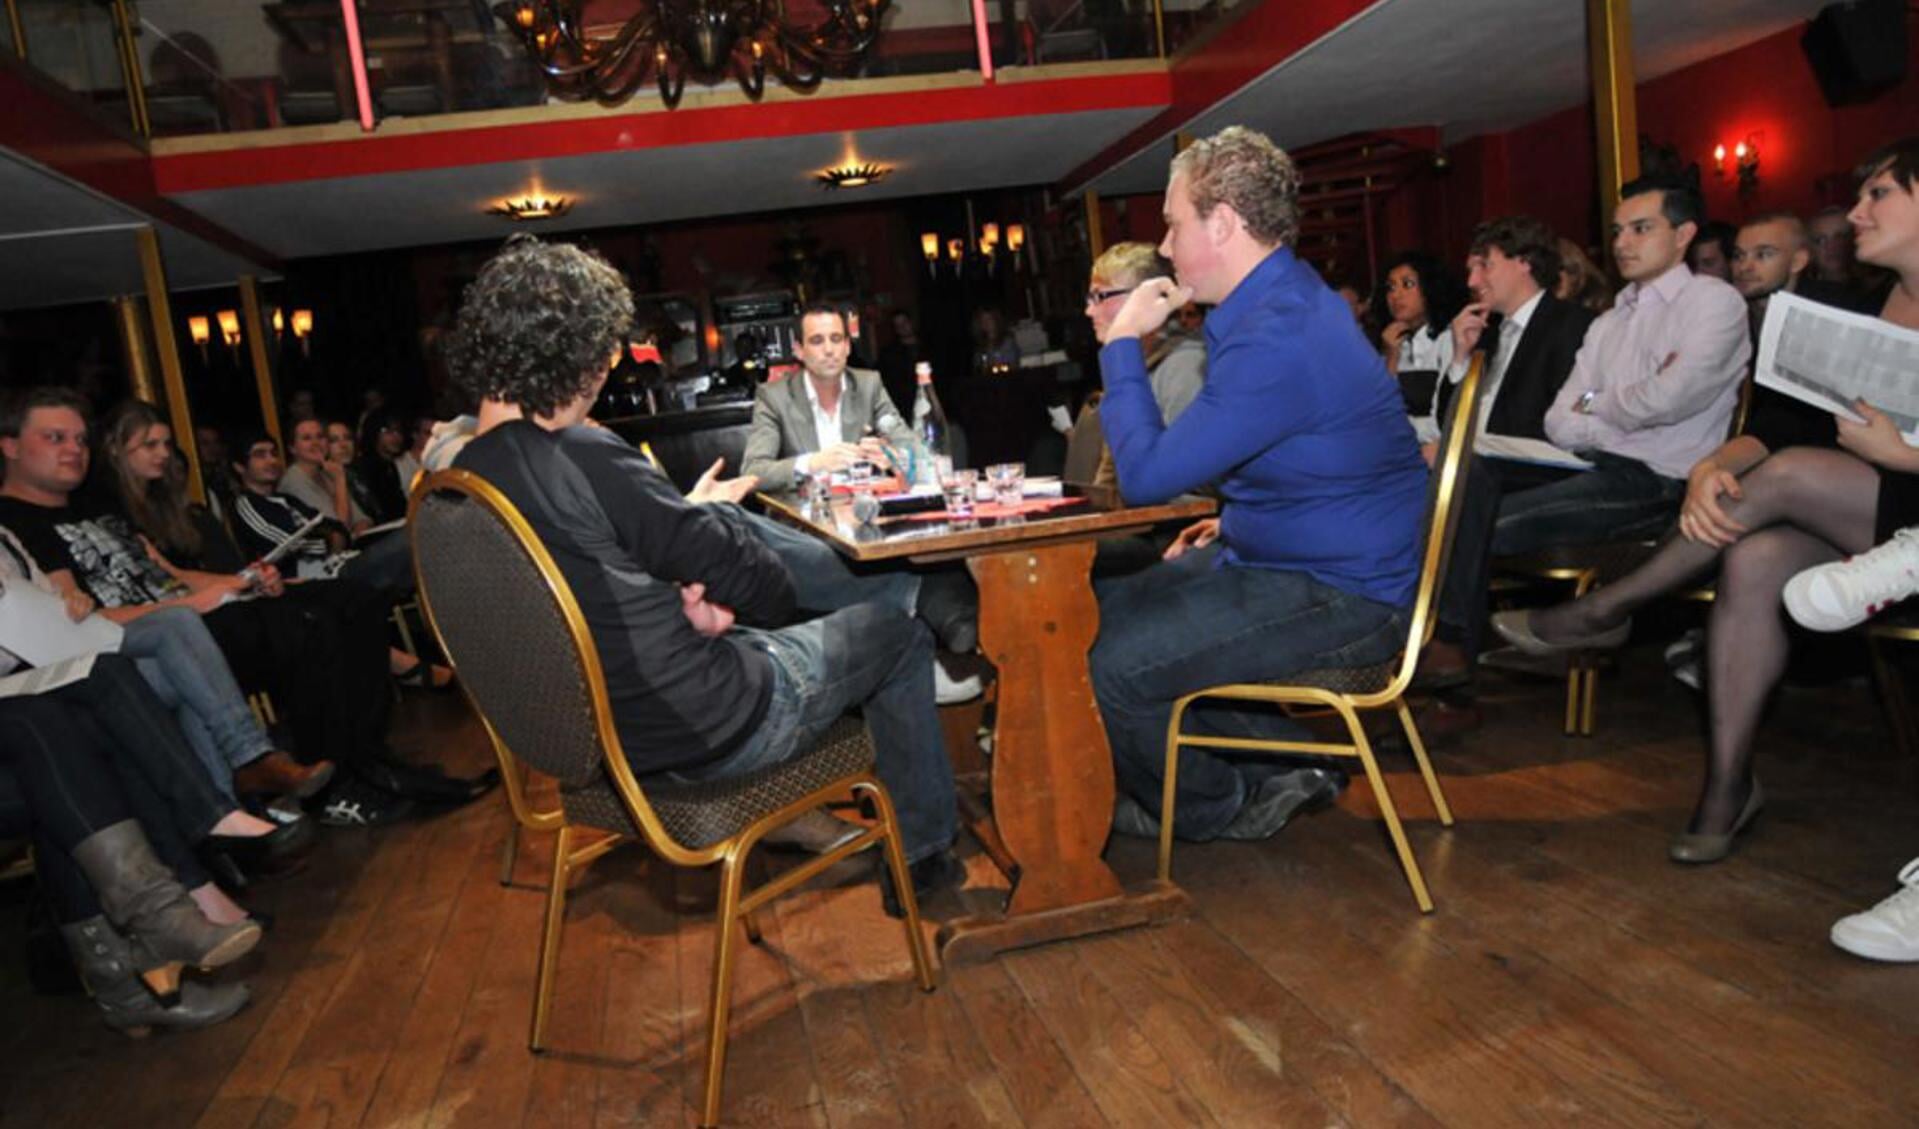 Internationale studenten in debat met politici over Breda studentenstad. foto Perry Roovers